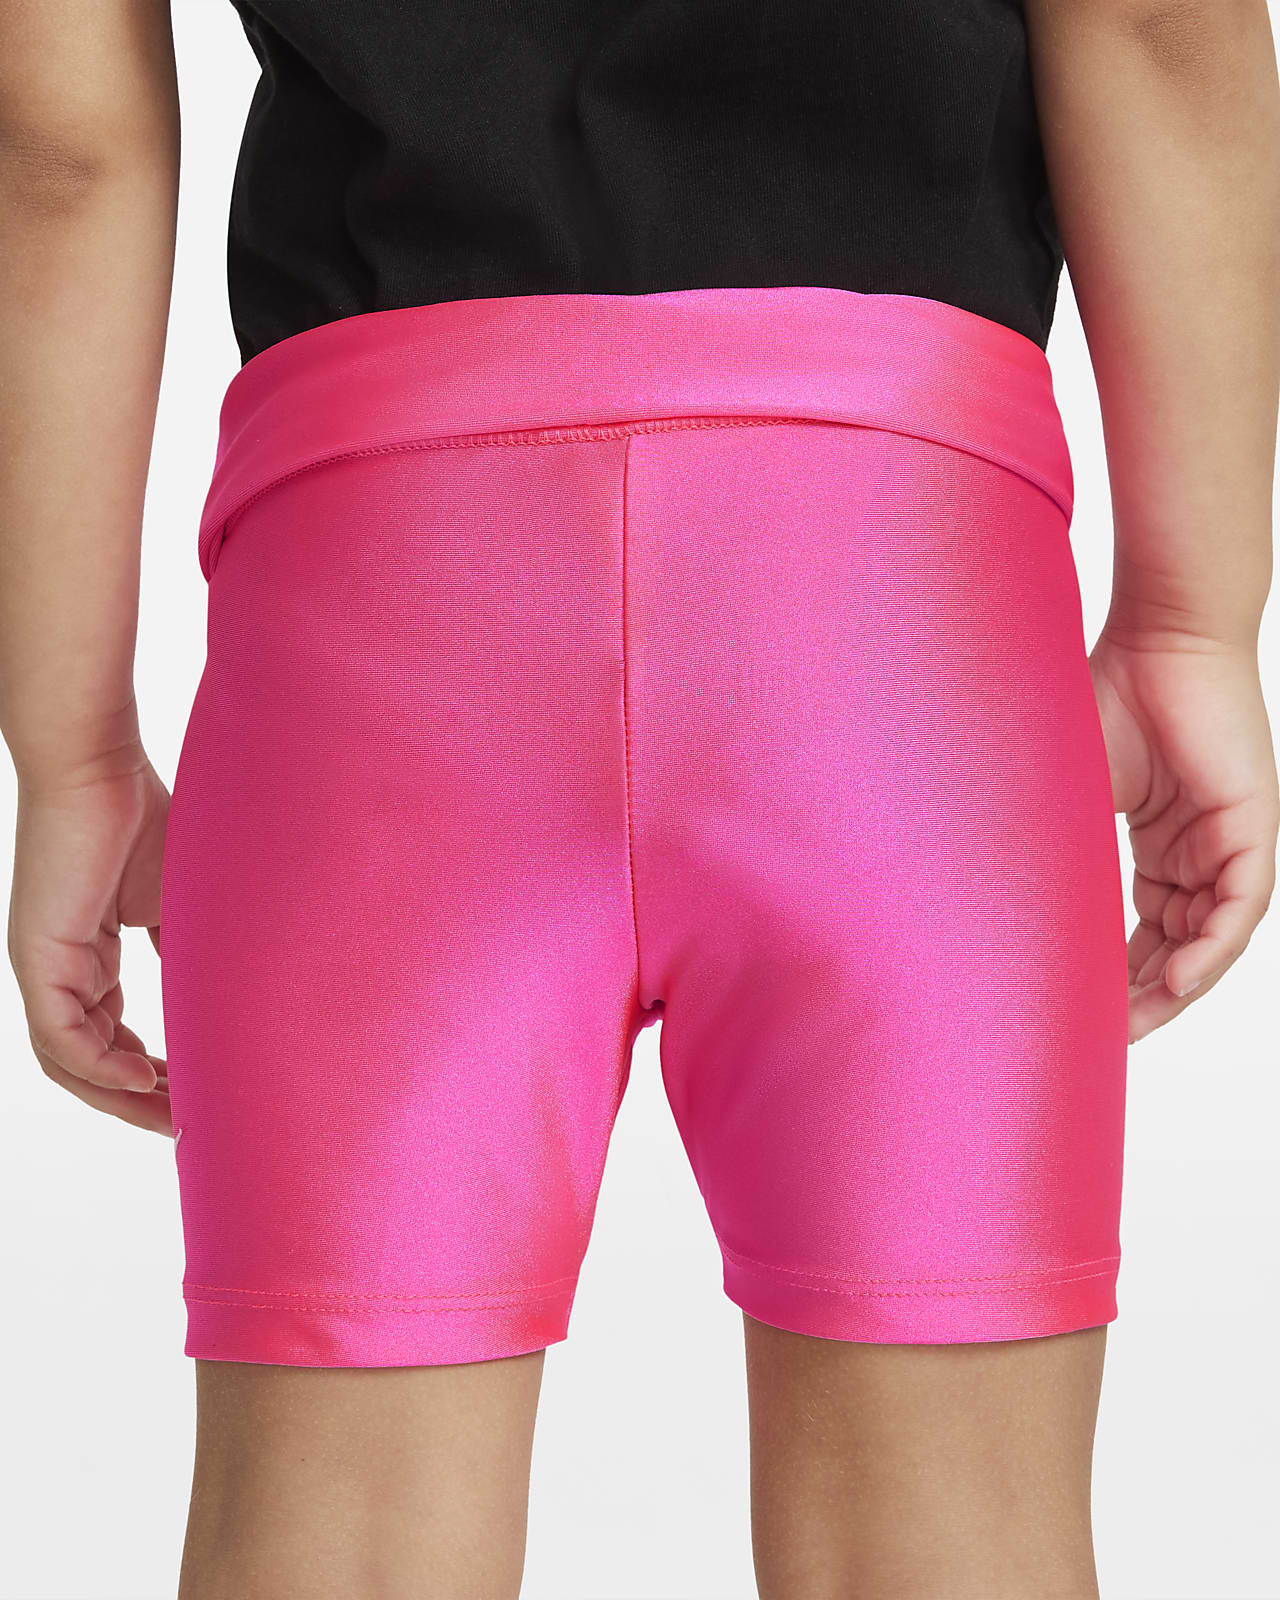 nike pink bike shorts